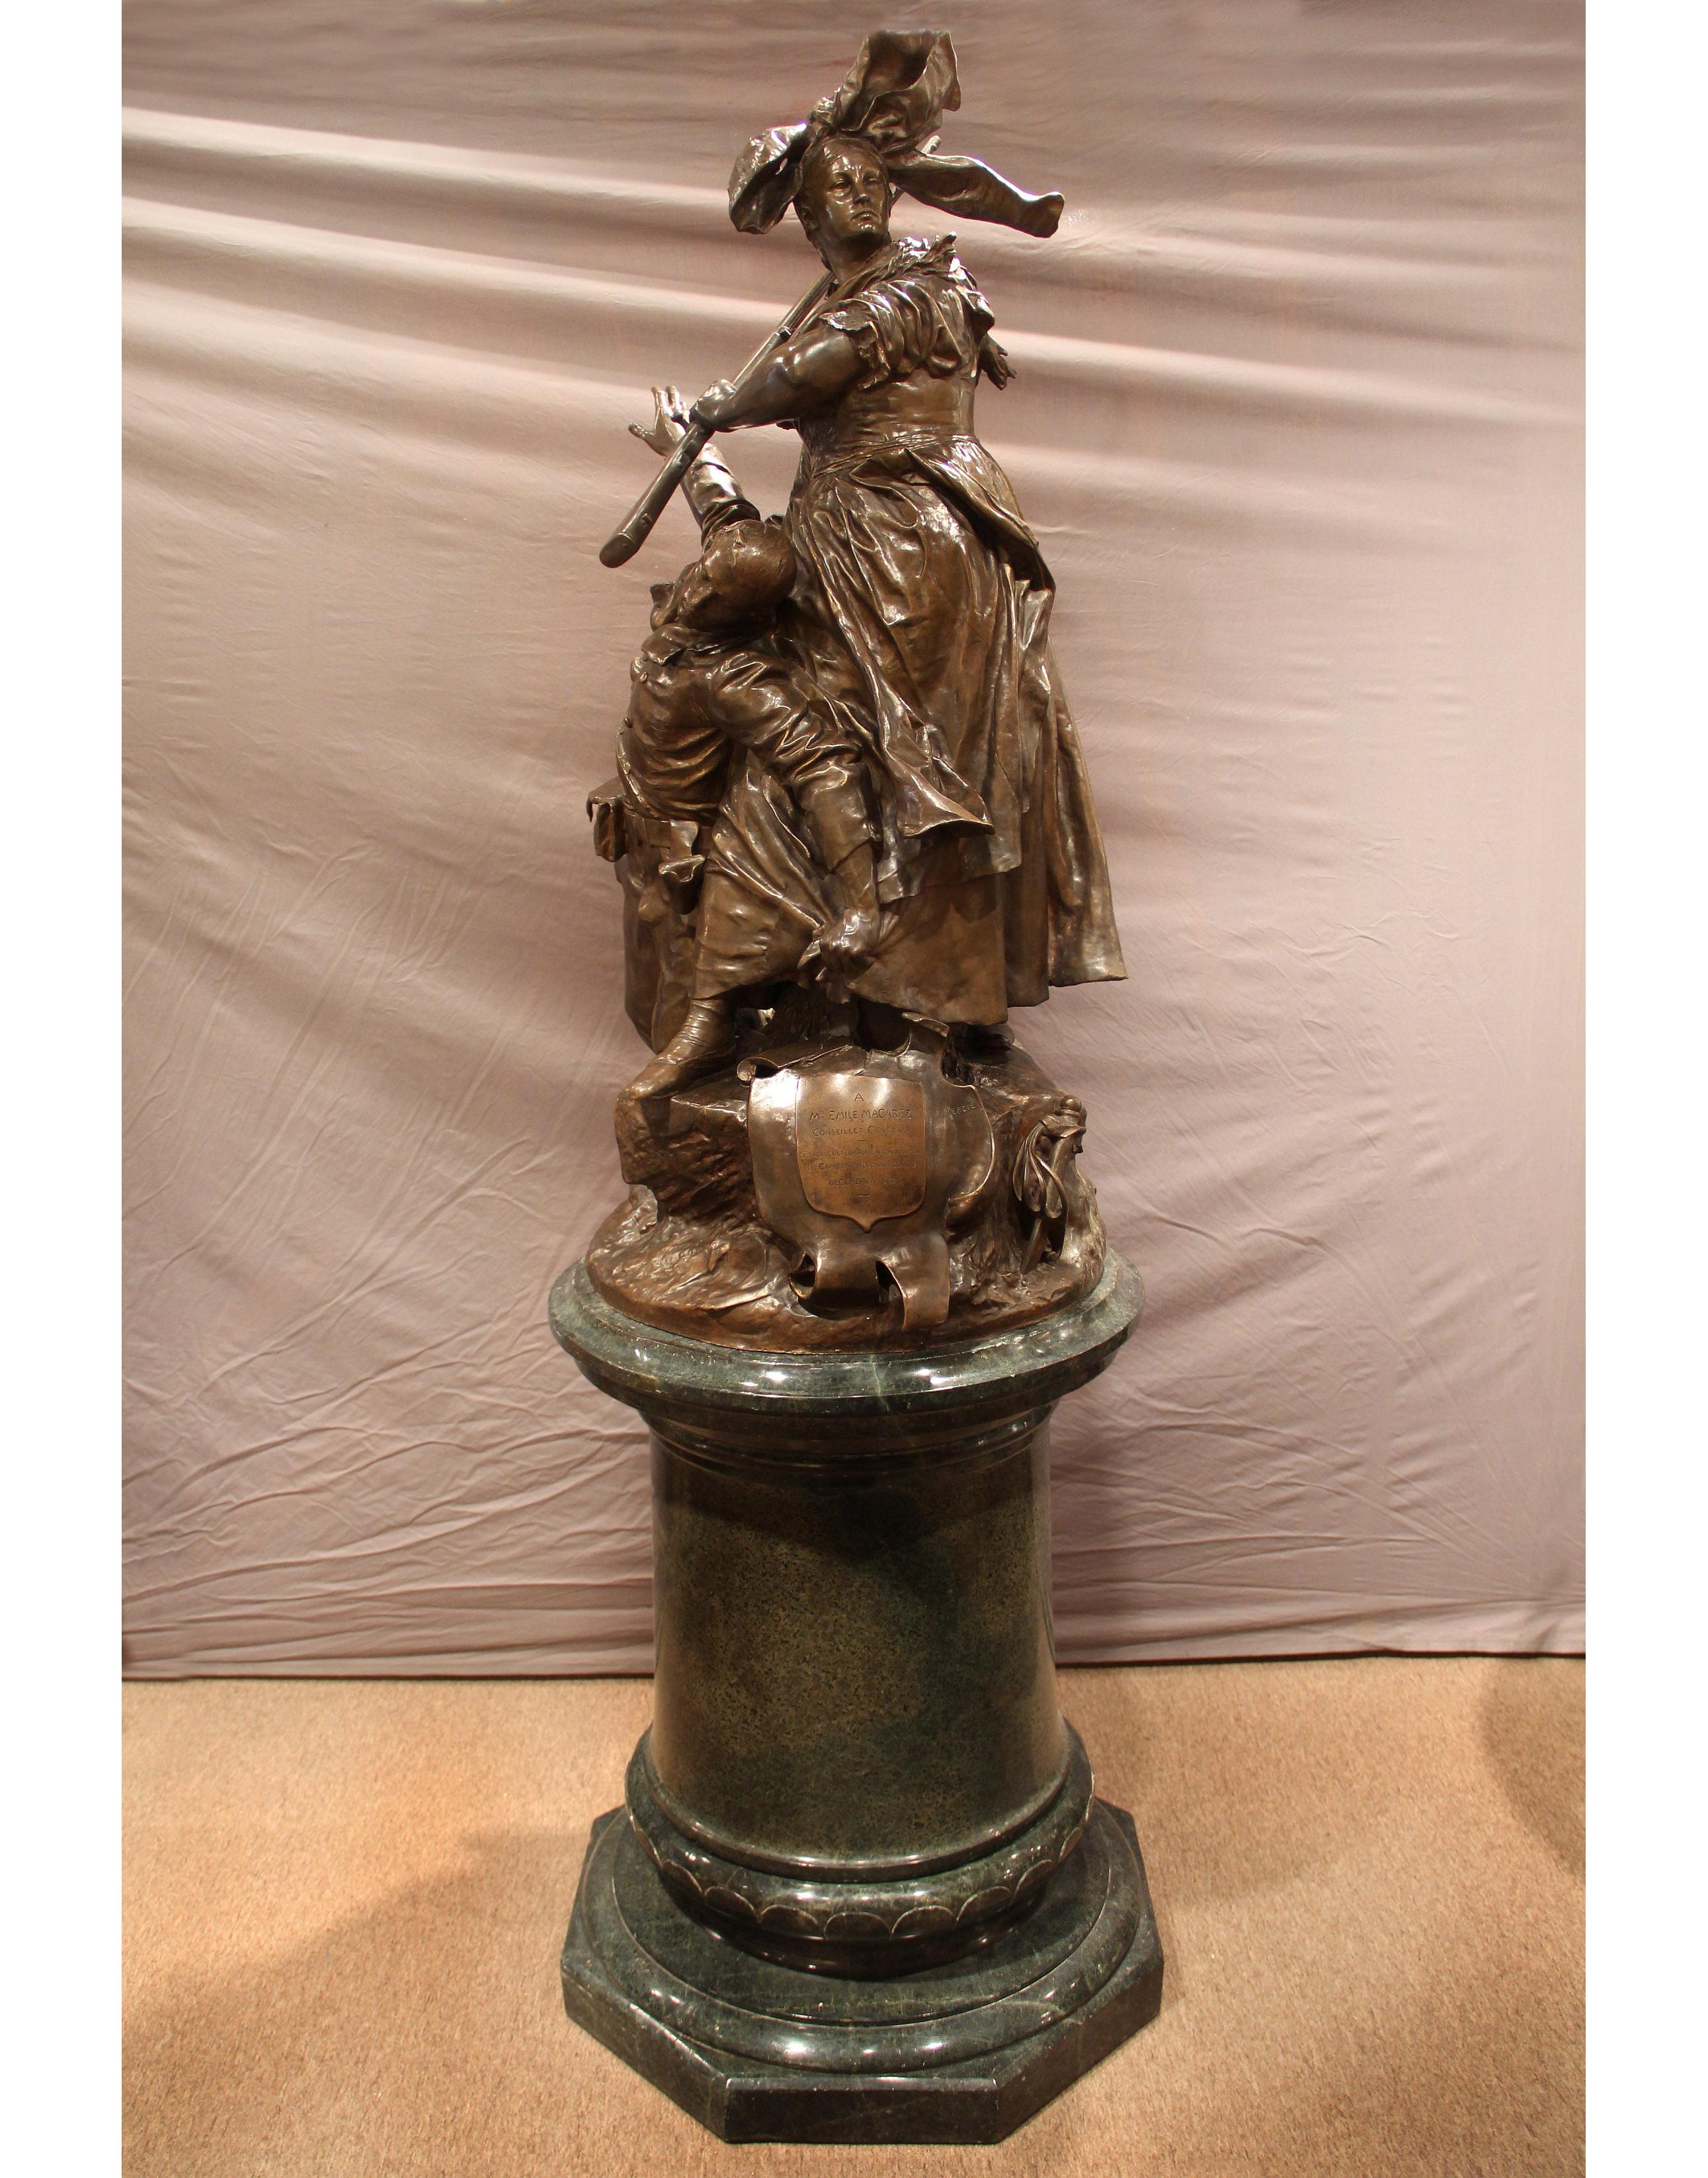 Grand et exceptionnel groupe de figurines en bronze patiné de la fin du XIXe siècle intitulé 